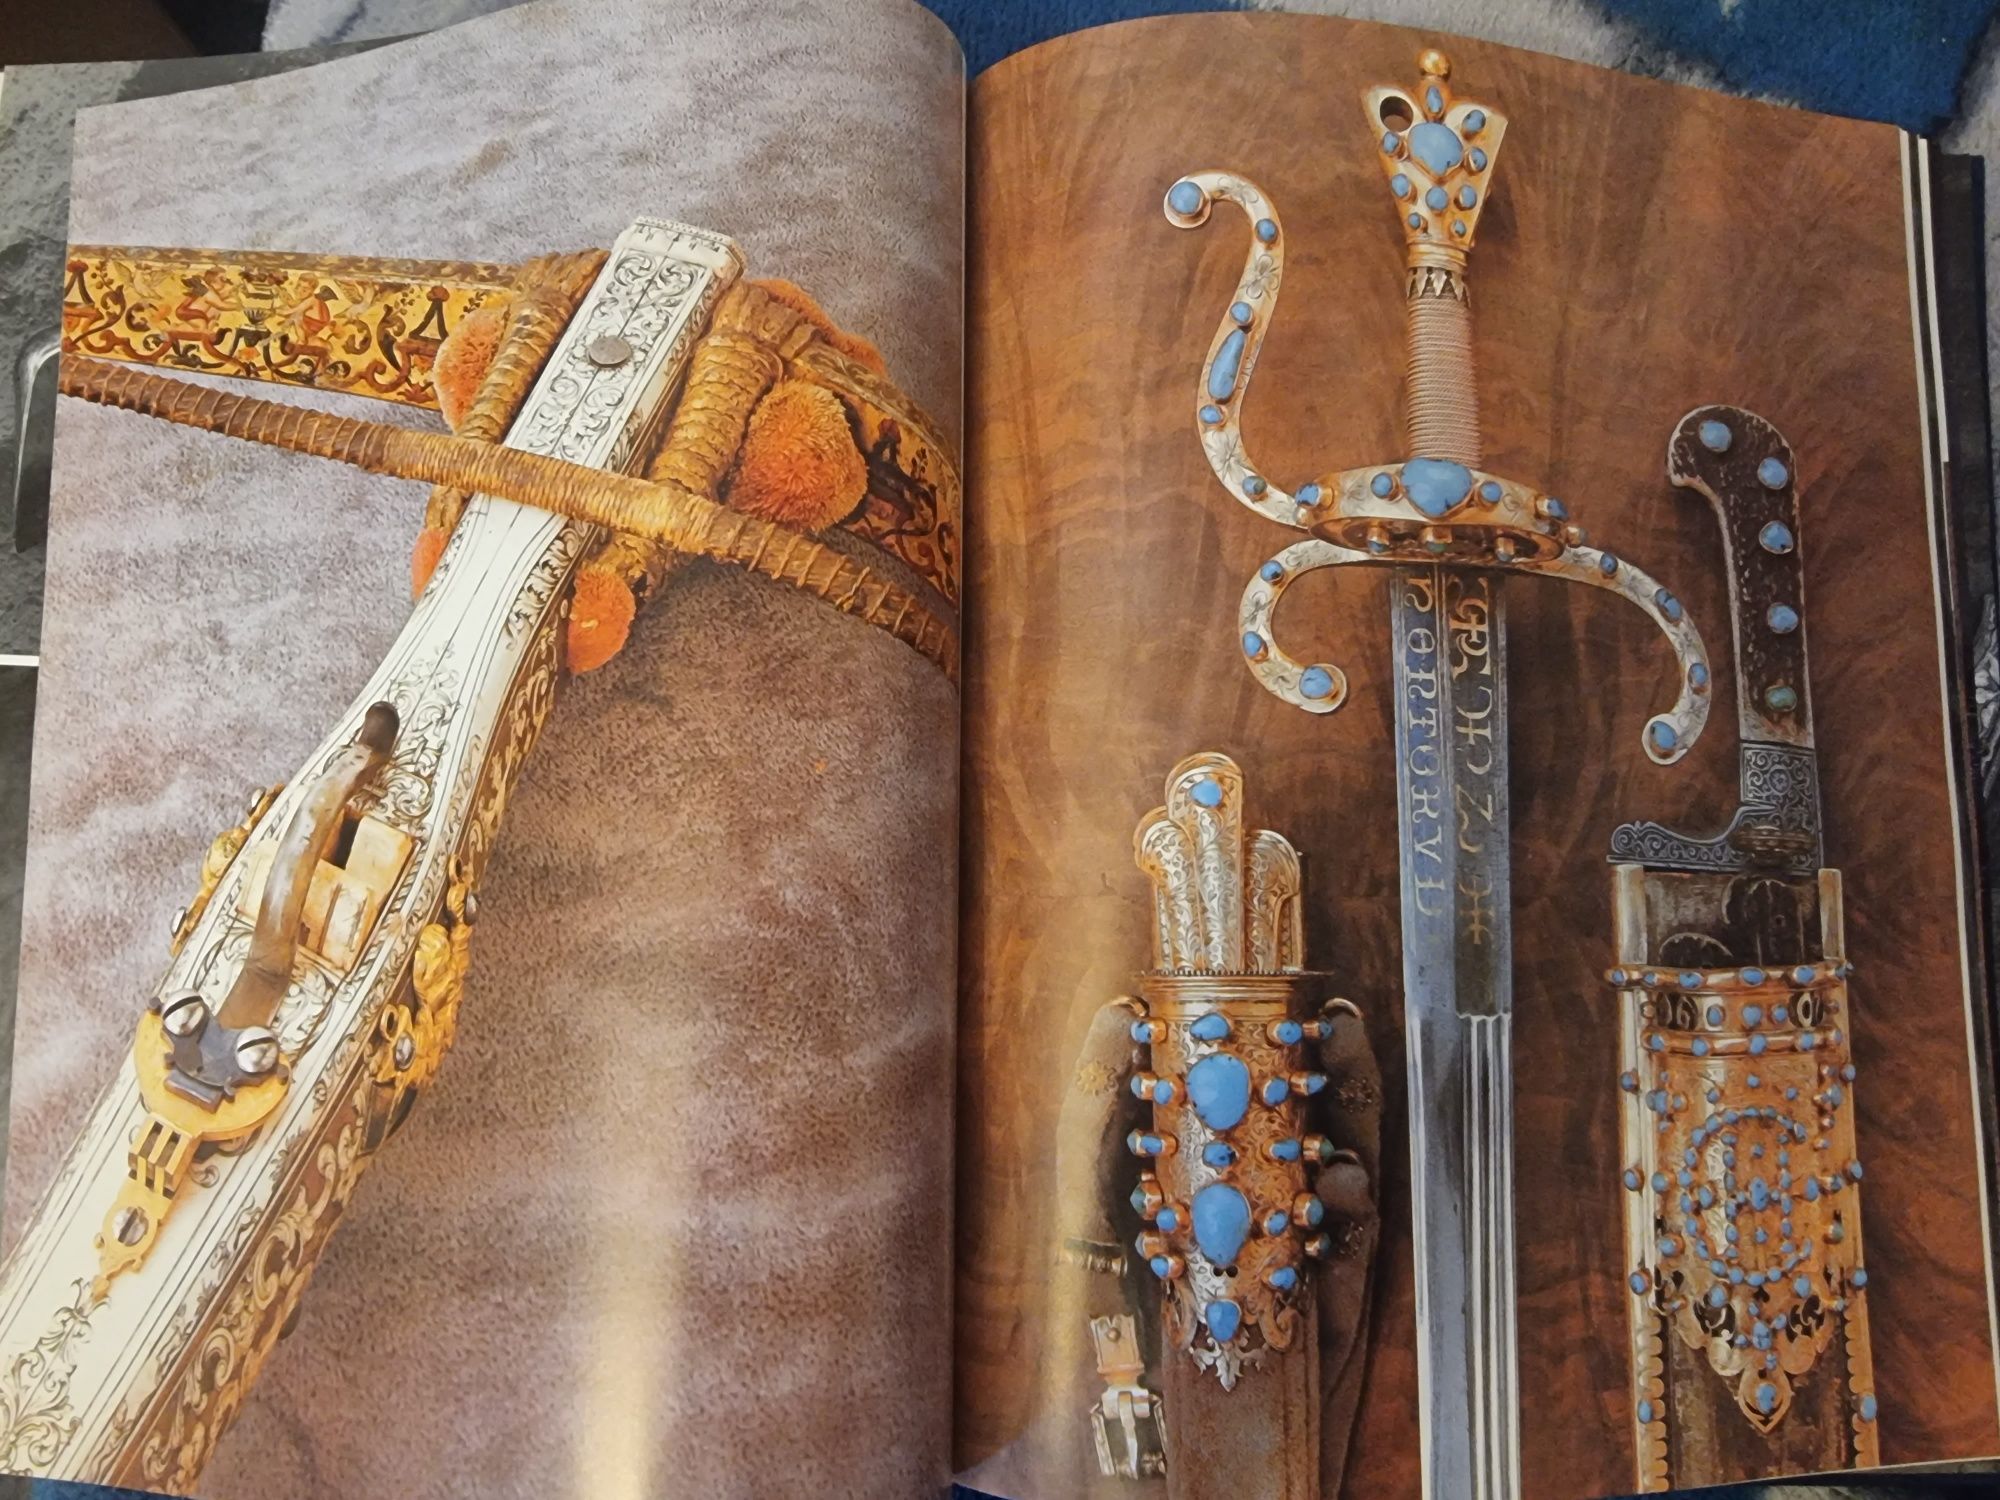 Katalog broń ceremonialna  miecze,szable,sztylety i inne  Prunkwaffen